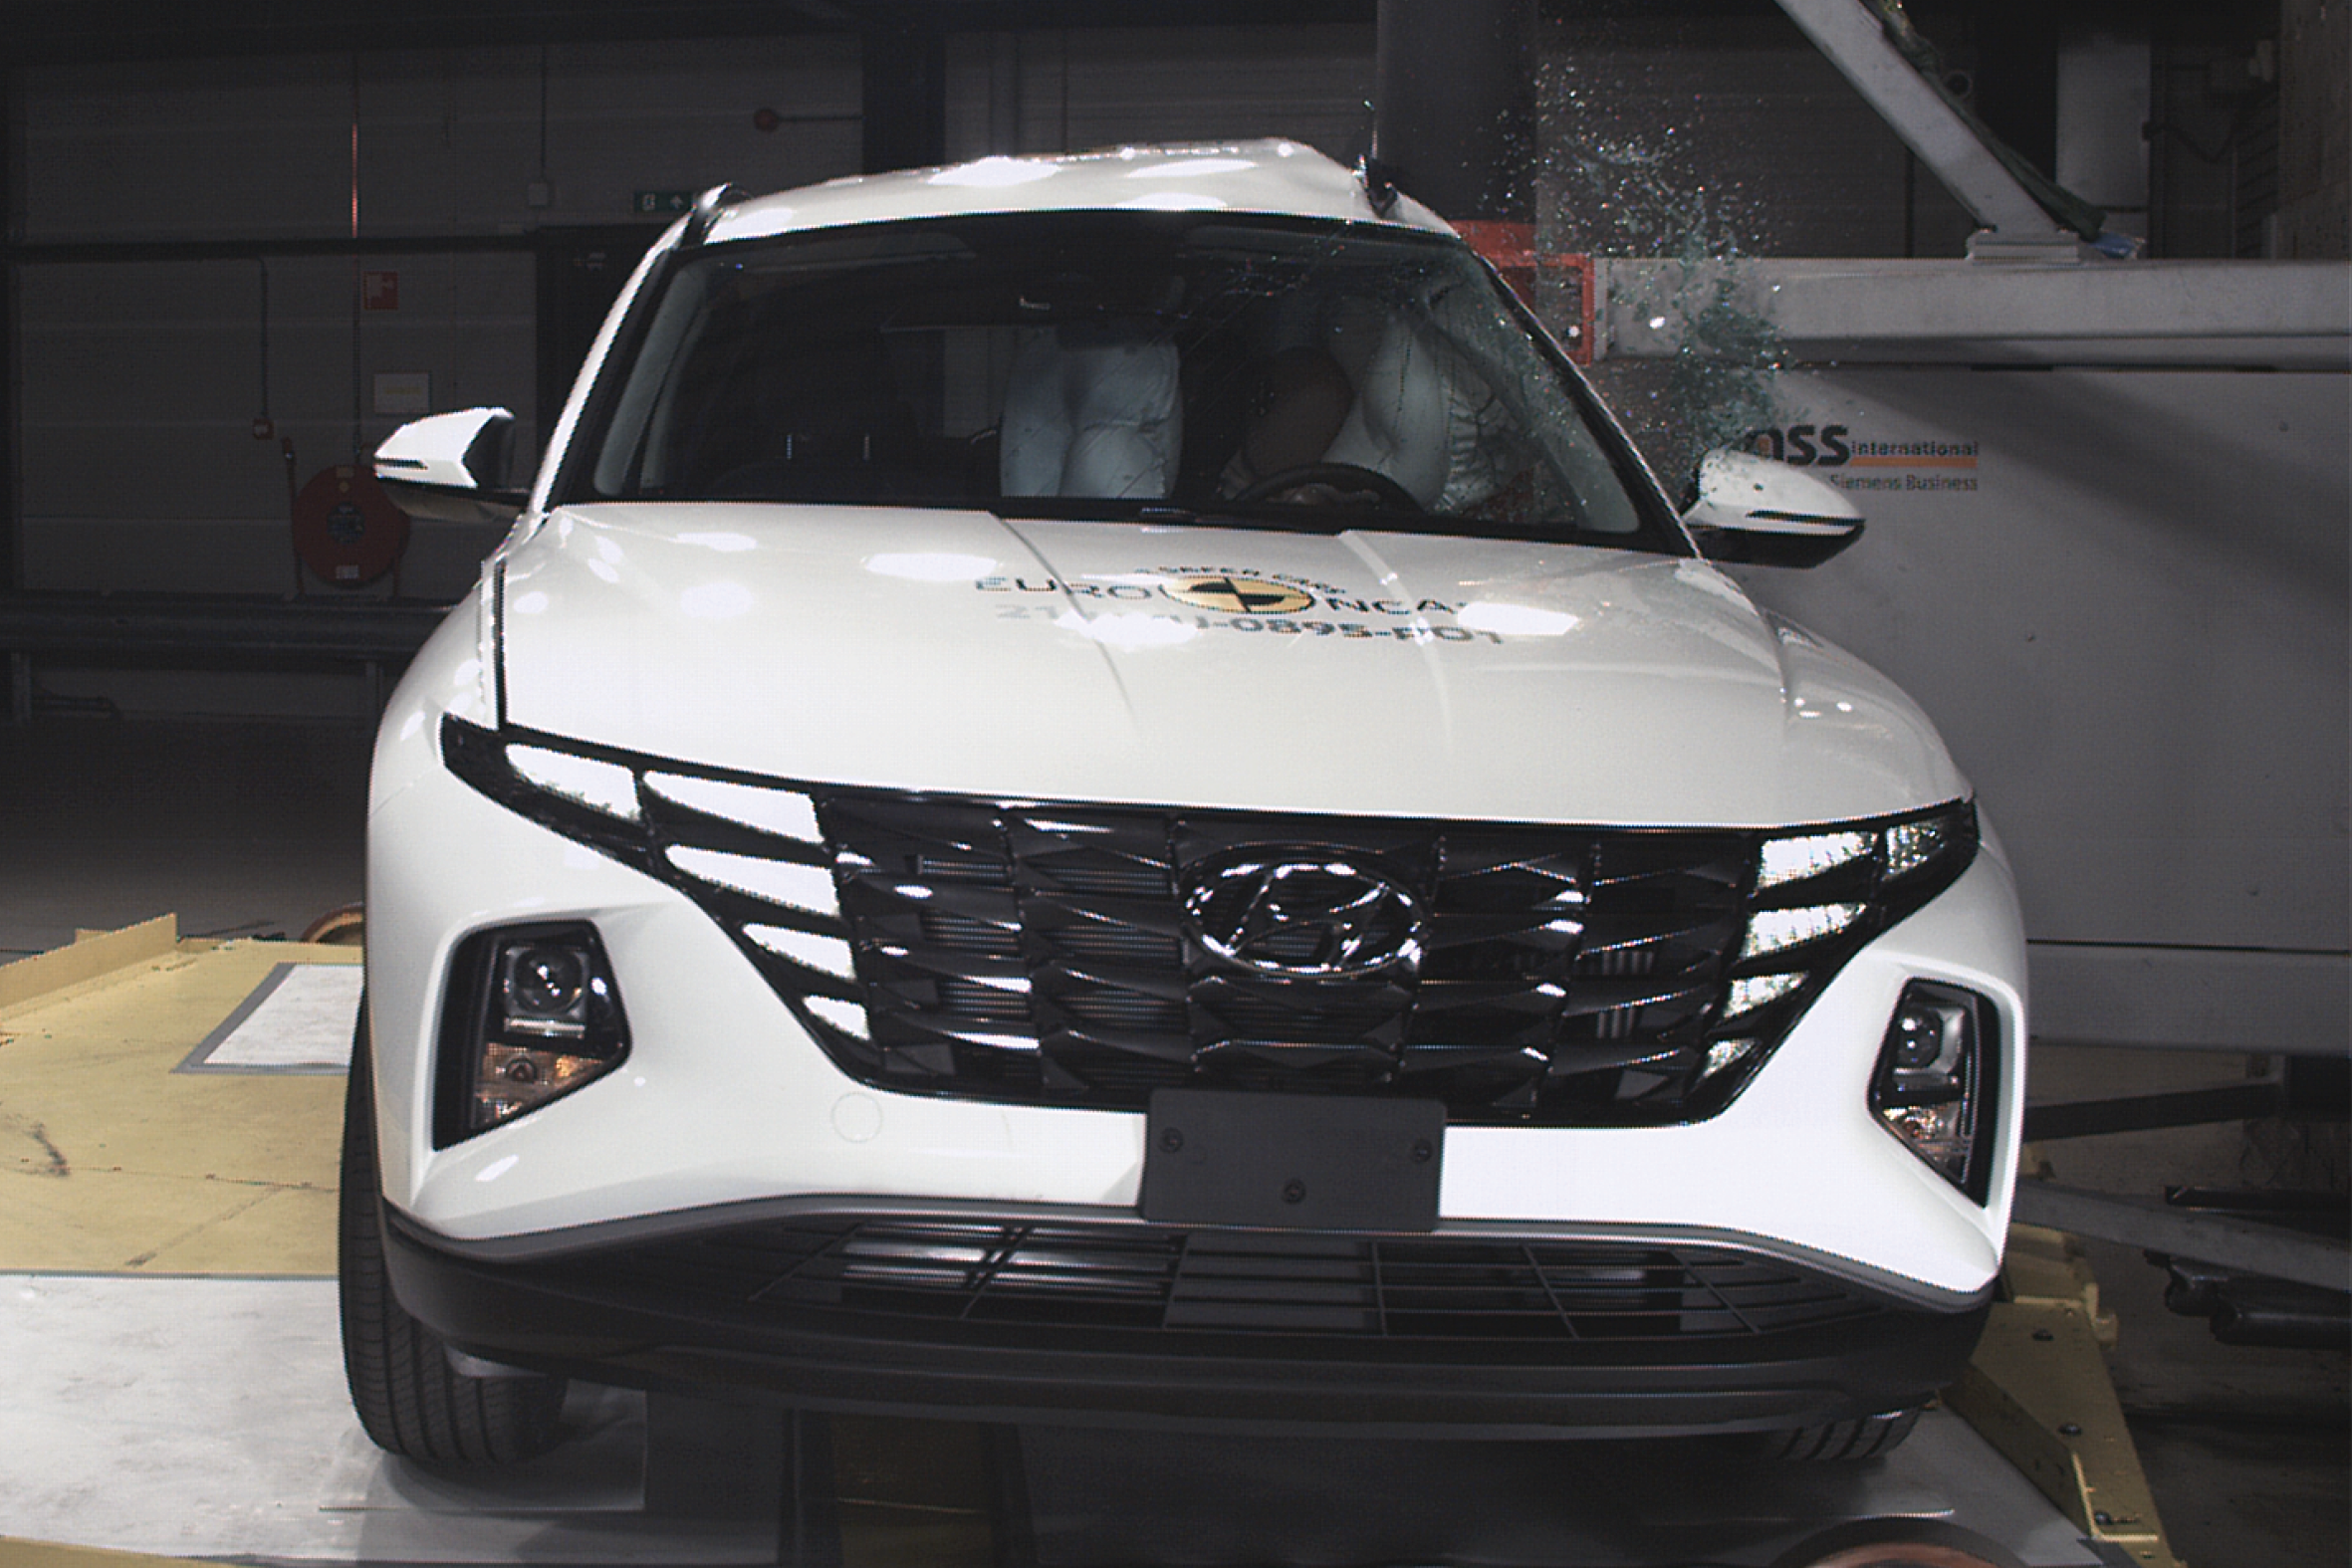 Hyundai Tucson NX4 Executive Diesel 1.6 review #tucson #nx4 #hyundai 